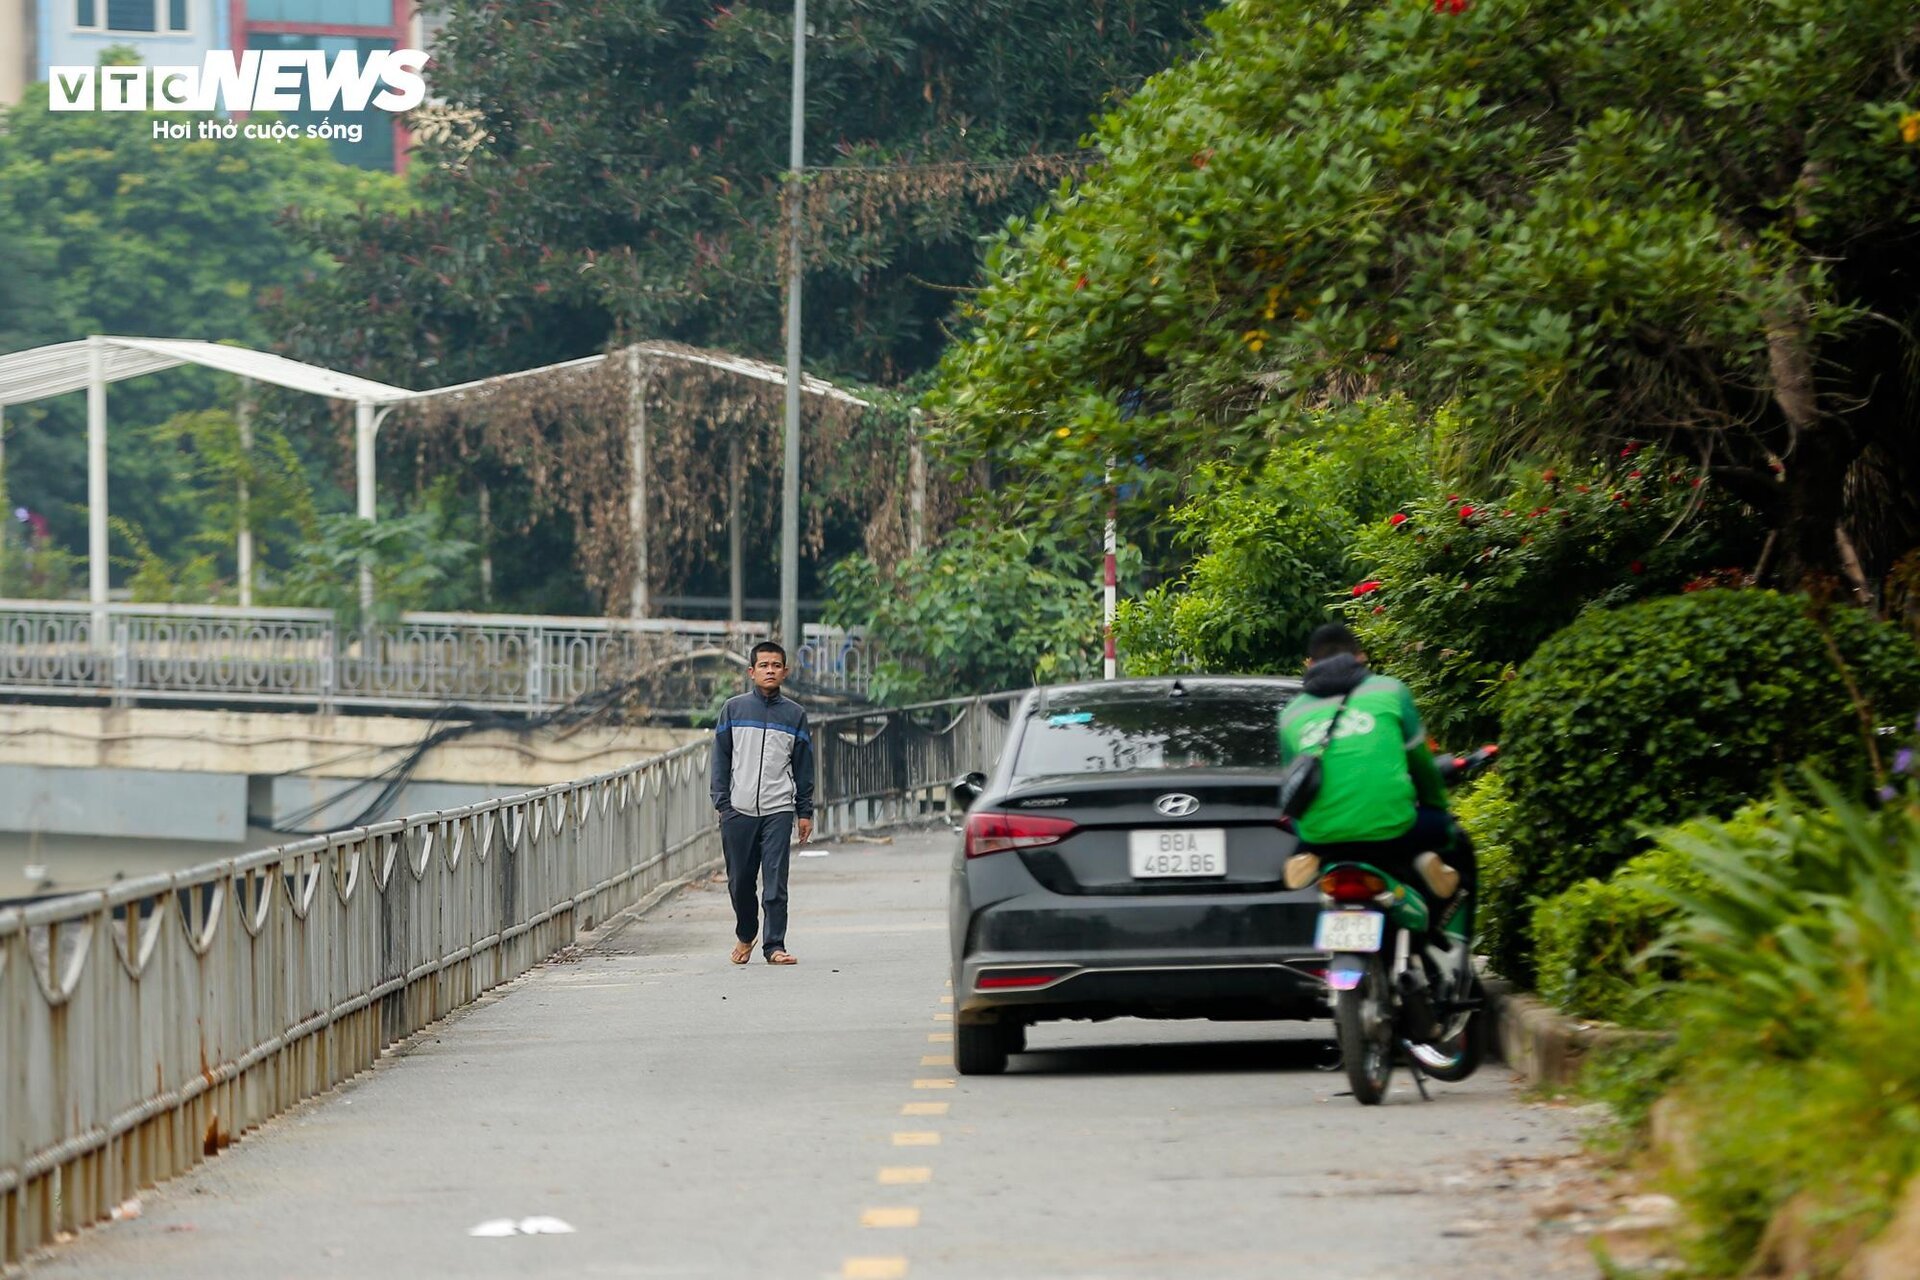 Cận cảnh 2 tuyến đường ở Hà Nội đề xuất thiết kế làn đường dành riêng cho xe đạp - Ảnh 14